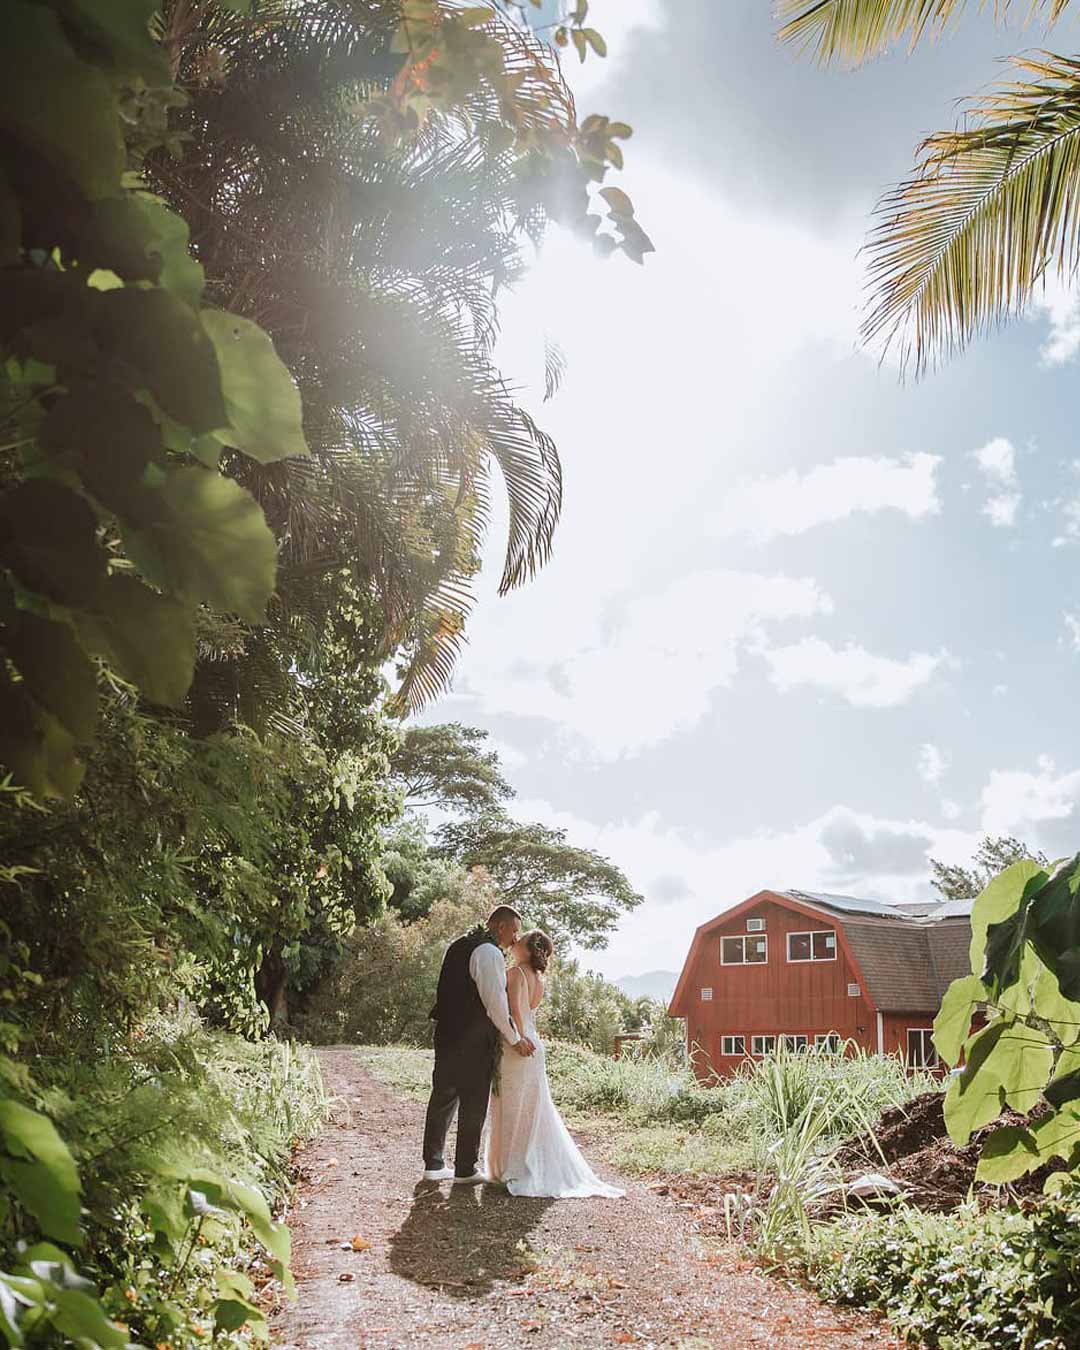 best wedding venues in hawaii trees house